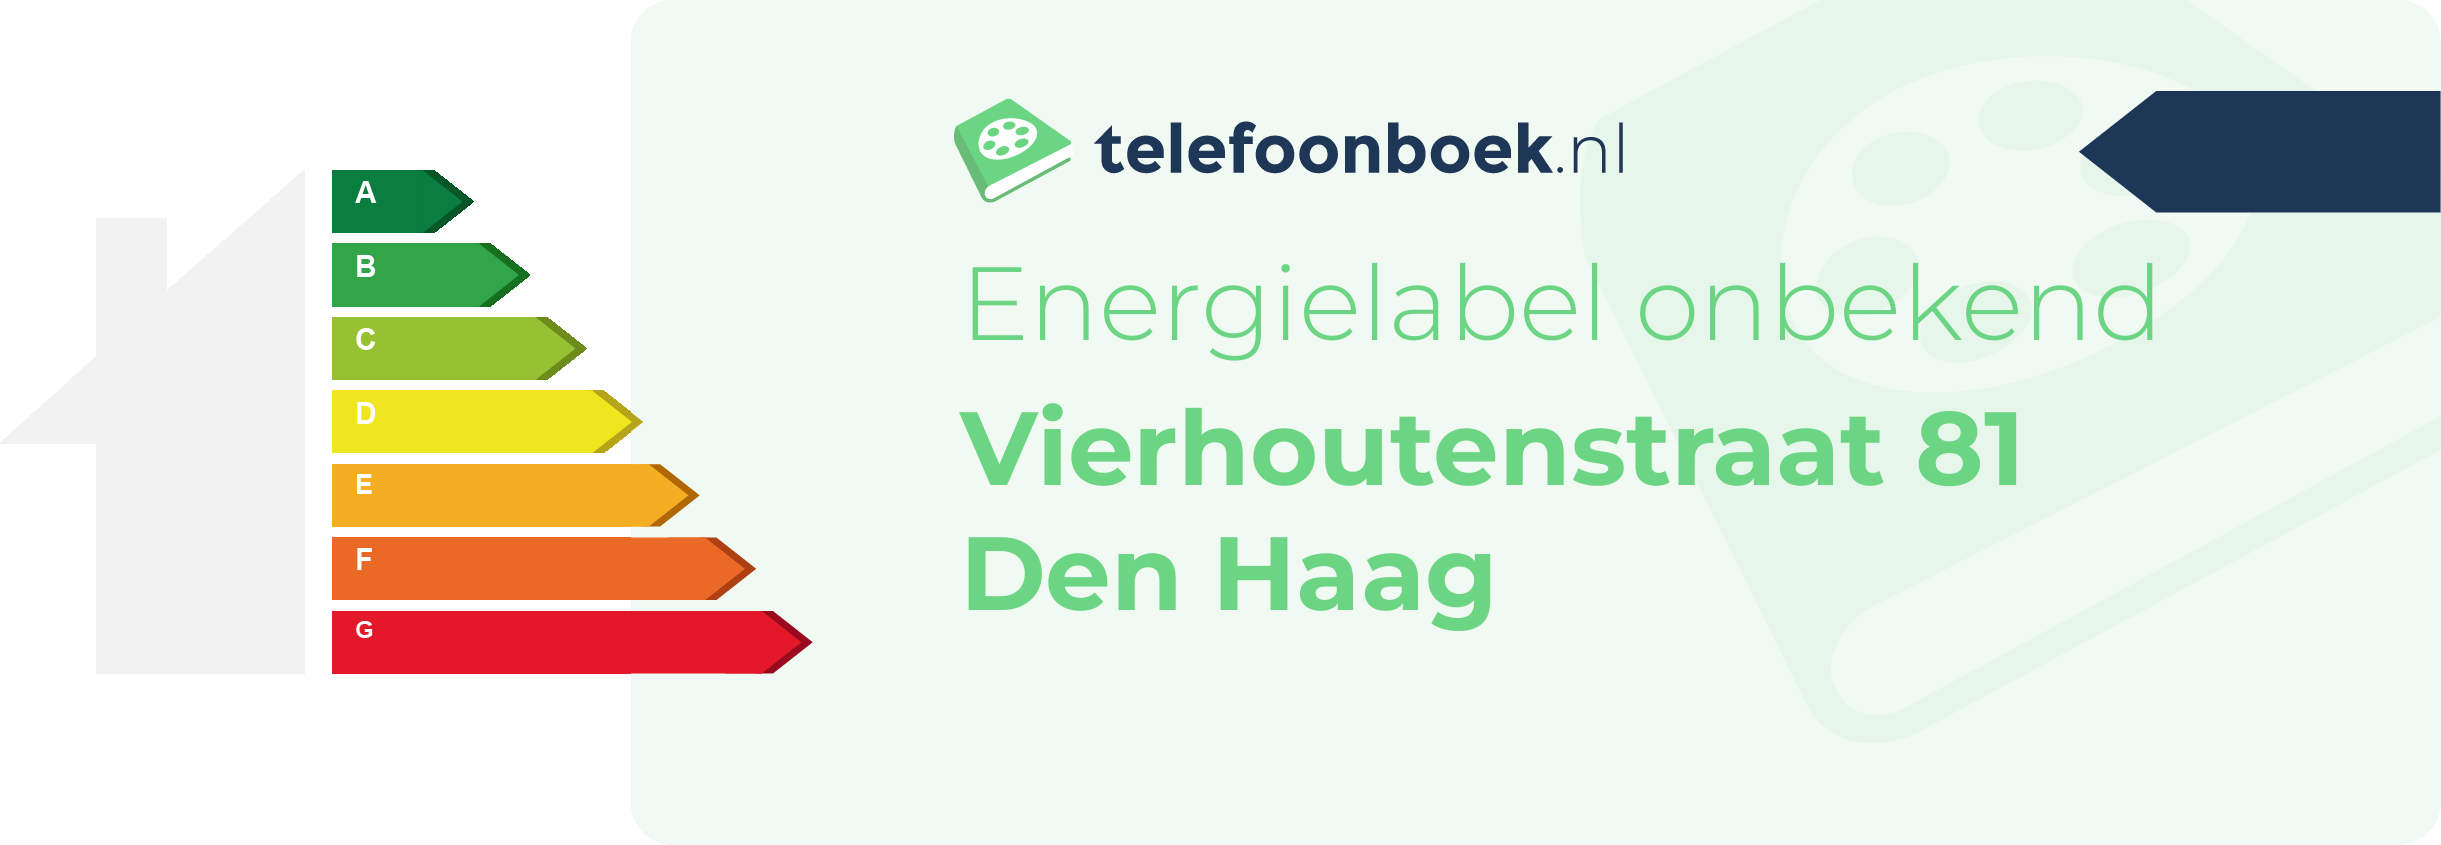 Energielabel Vierhoutenstraat 81 Den Haag